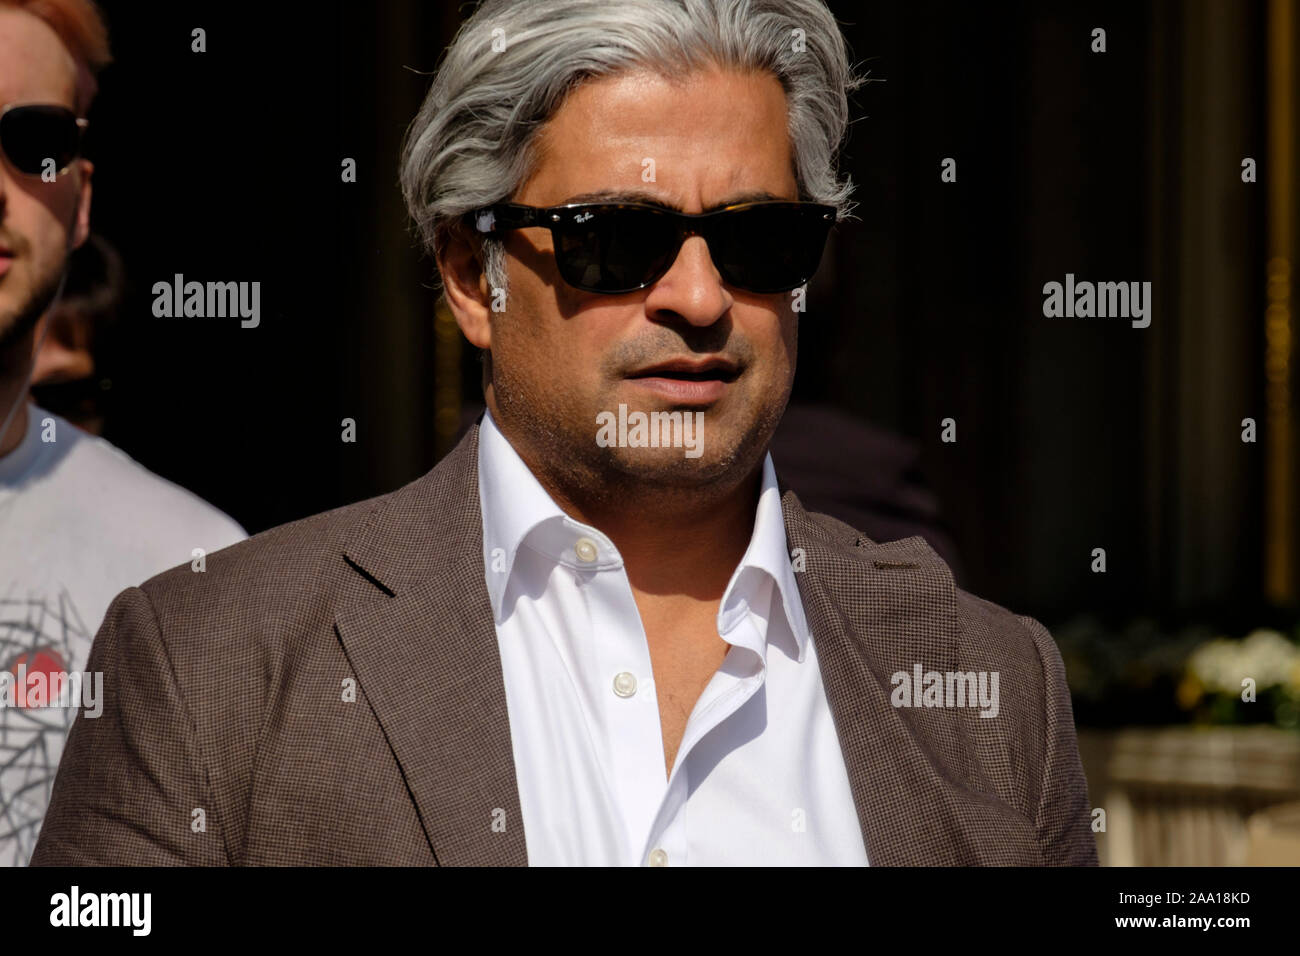 Homme, 40s, cheveux gris, lunettes de soleil Ray Ban, aspect moyen-oriental  sur London Street Photo Stock - Alamy